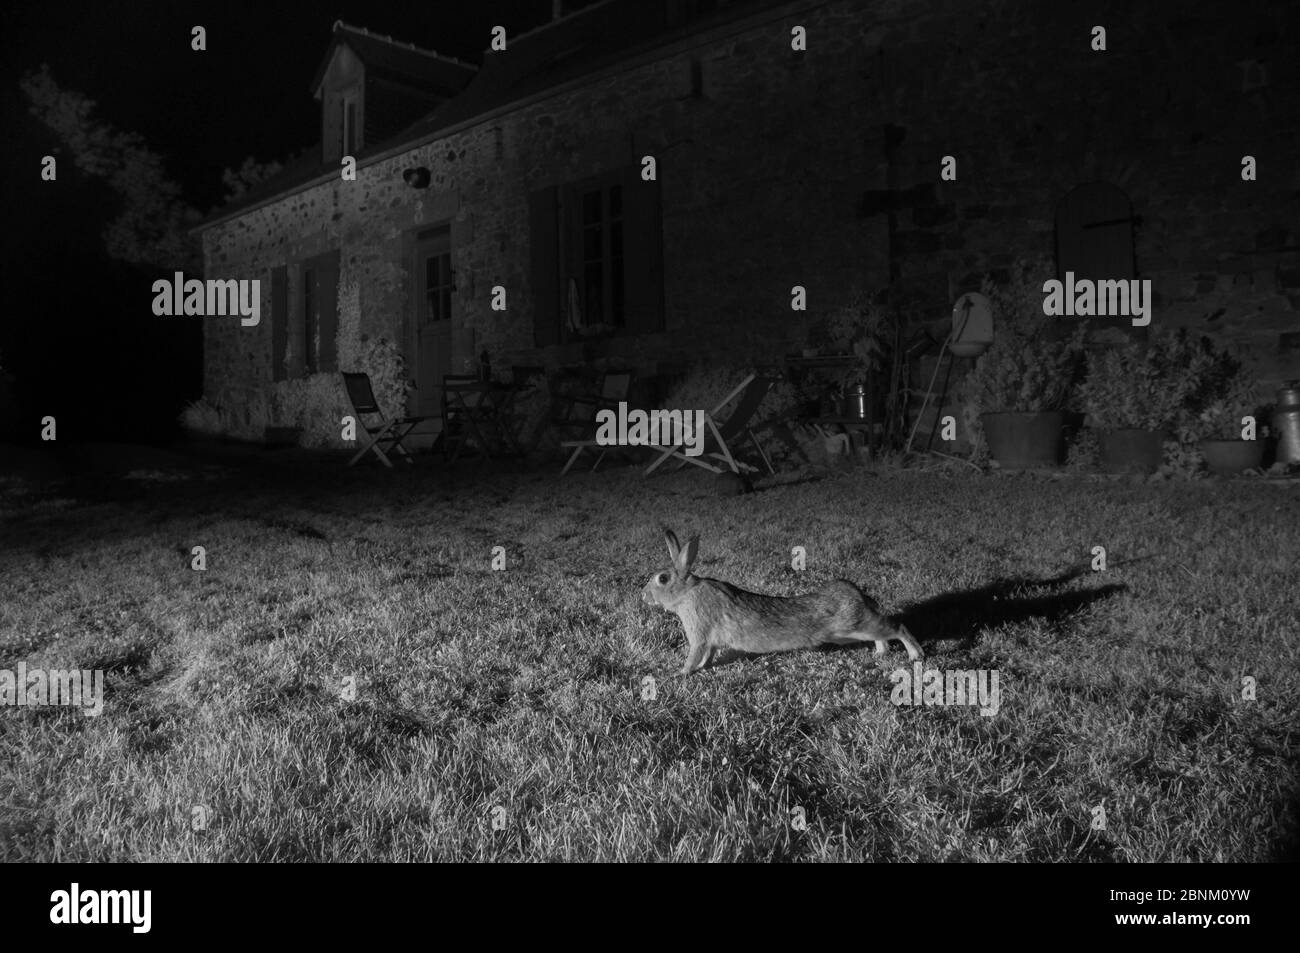 Lapins européens (Oryctolagus cuniculus) s'étendant à l'extérieur de la maison, pris avec la lumière infrarouge. France, juin. Banque D'Images